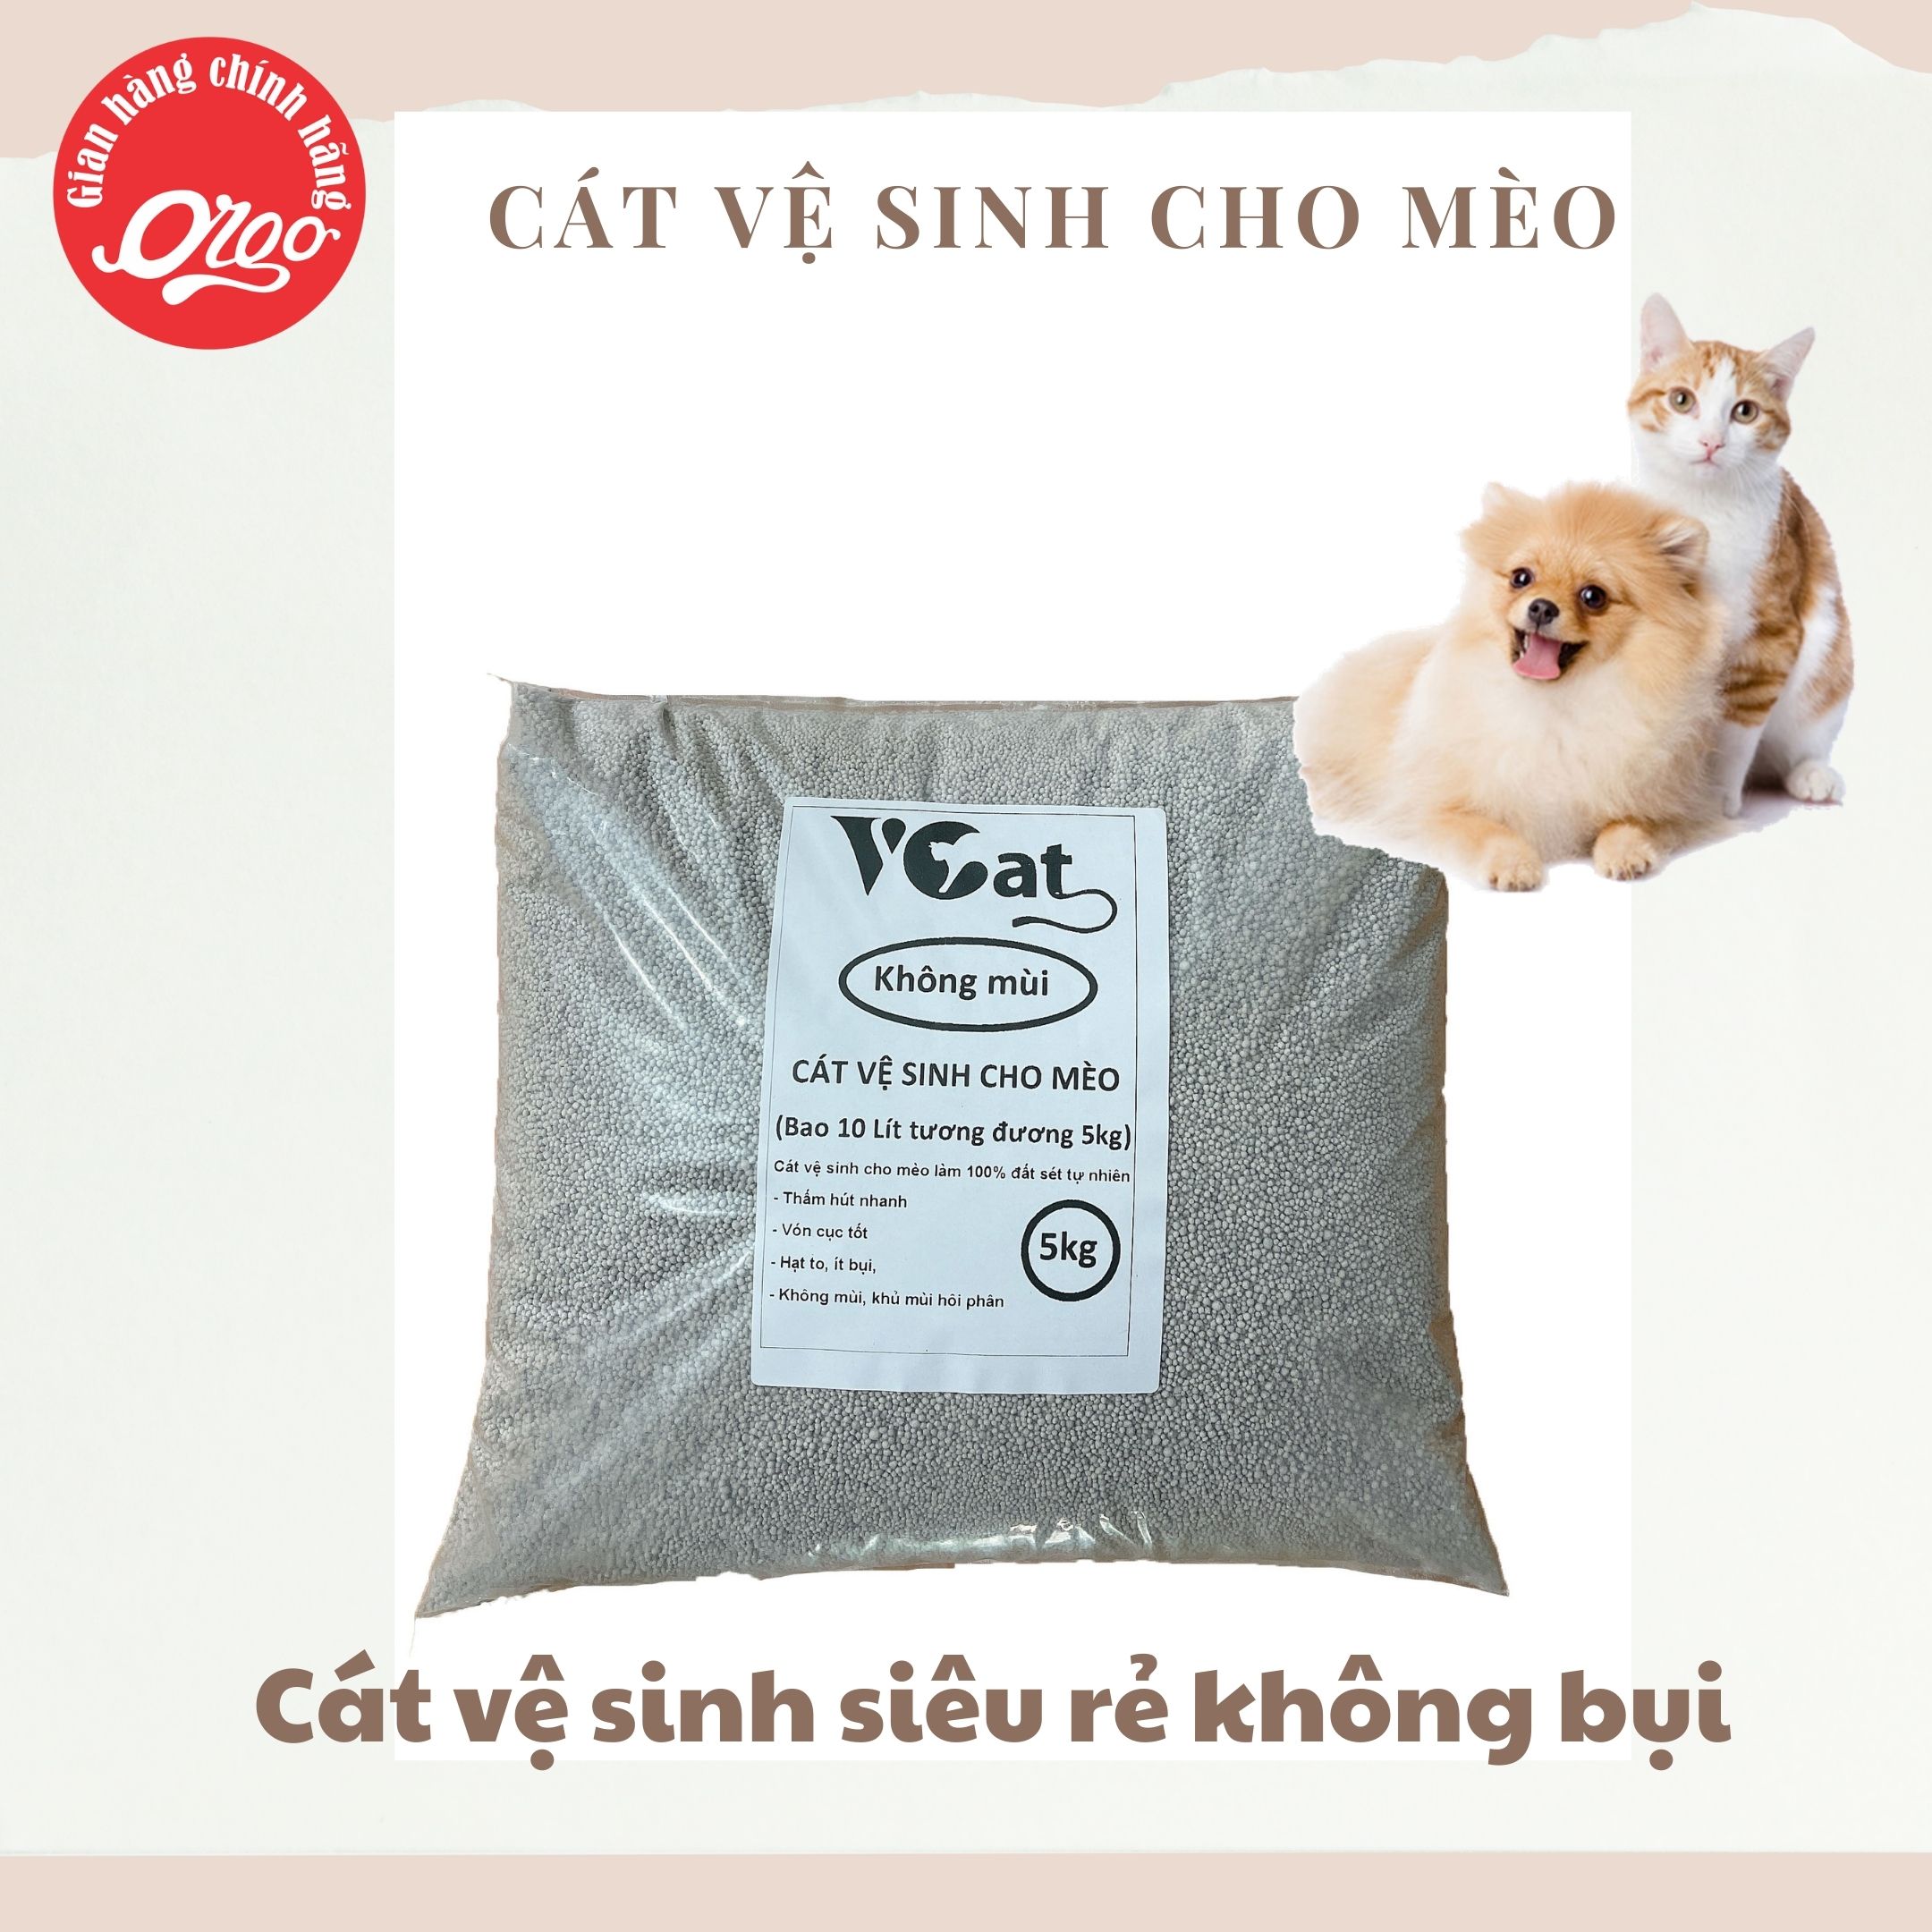 Orgo - VCat- Cát vệ sinh mèo cat for cats cát mèo cát cho mèo nhà vệ sinh